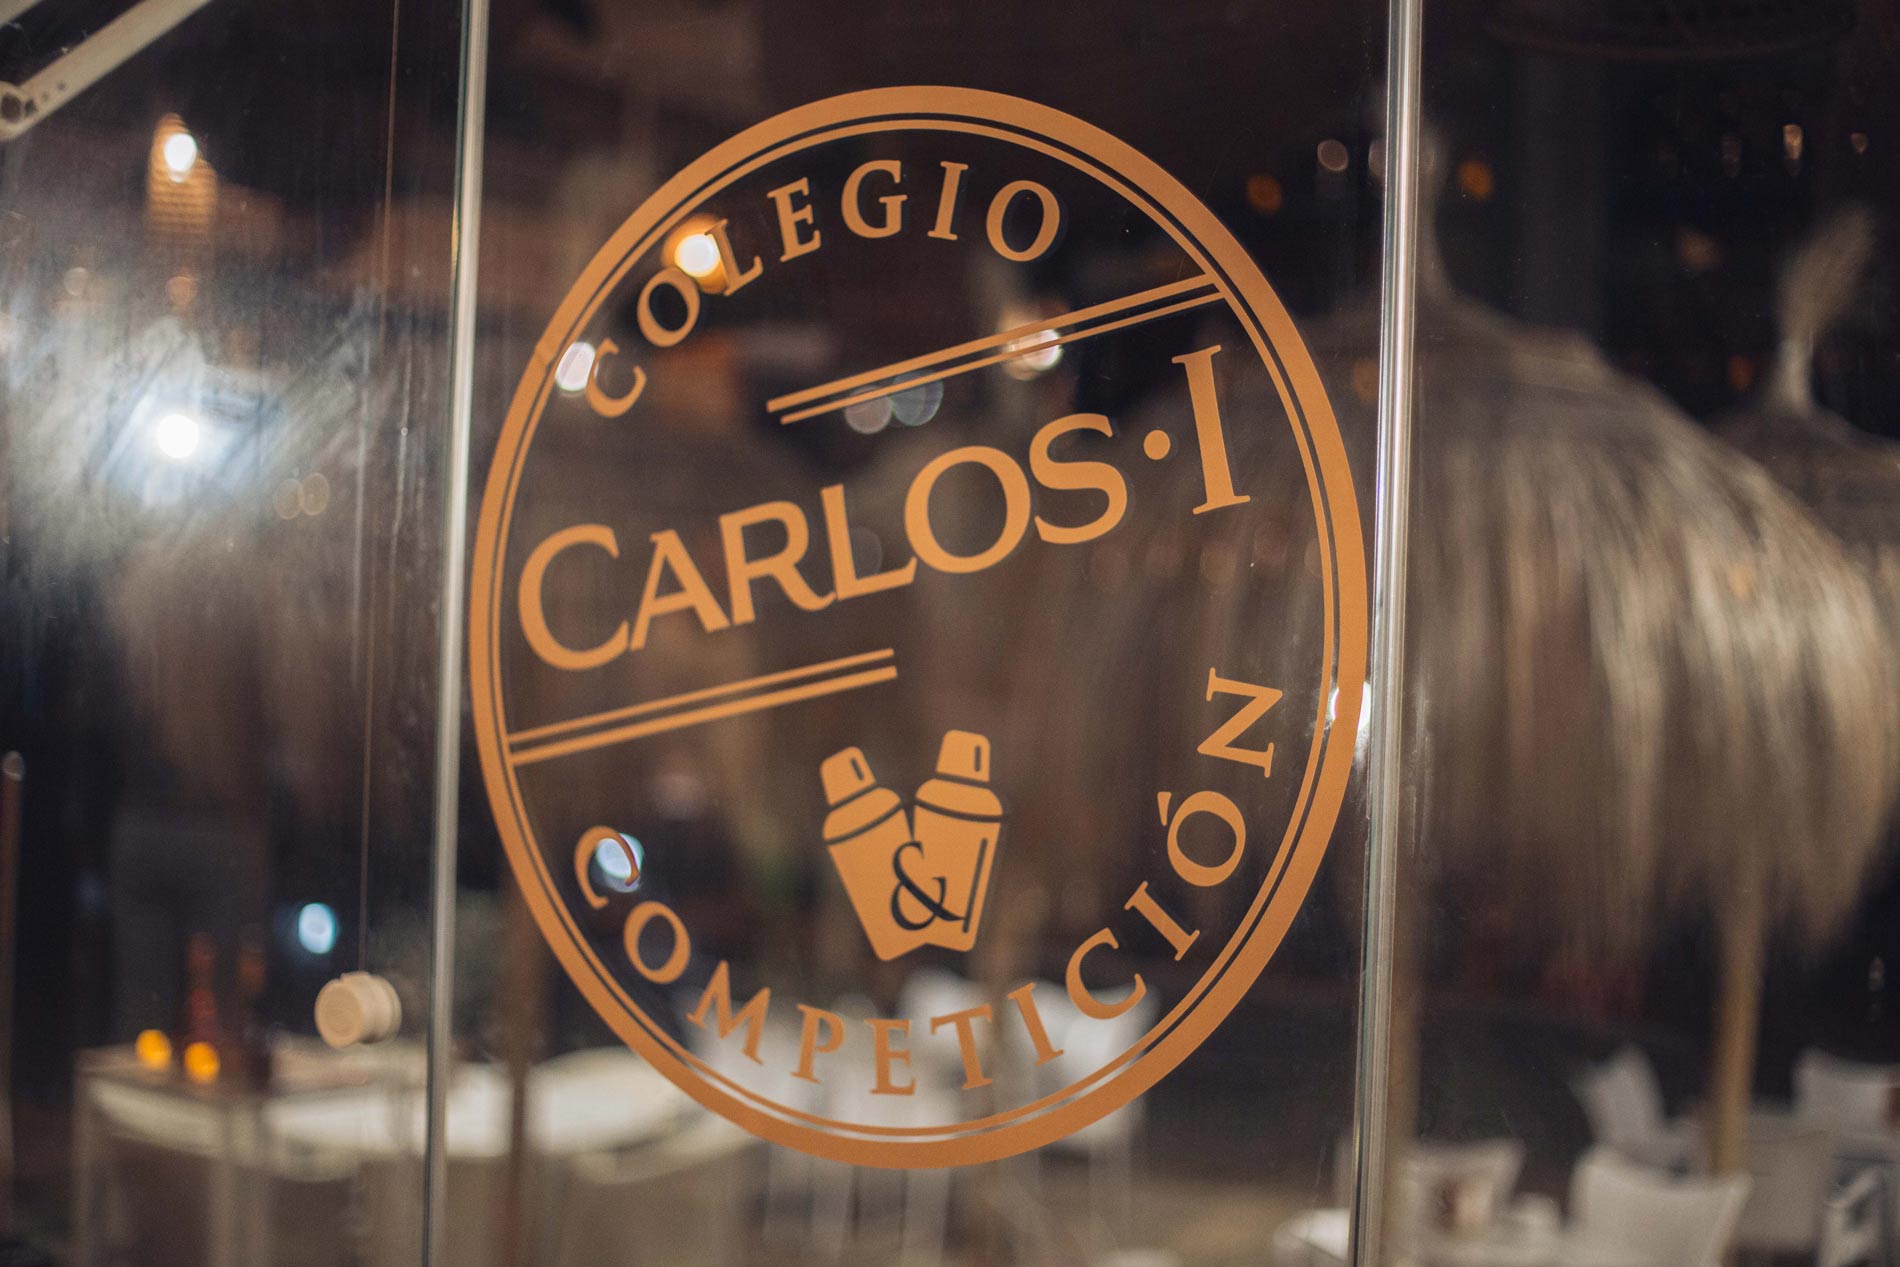 Carlos I Colegio Brandy Competition 2019